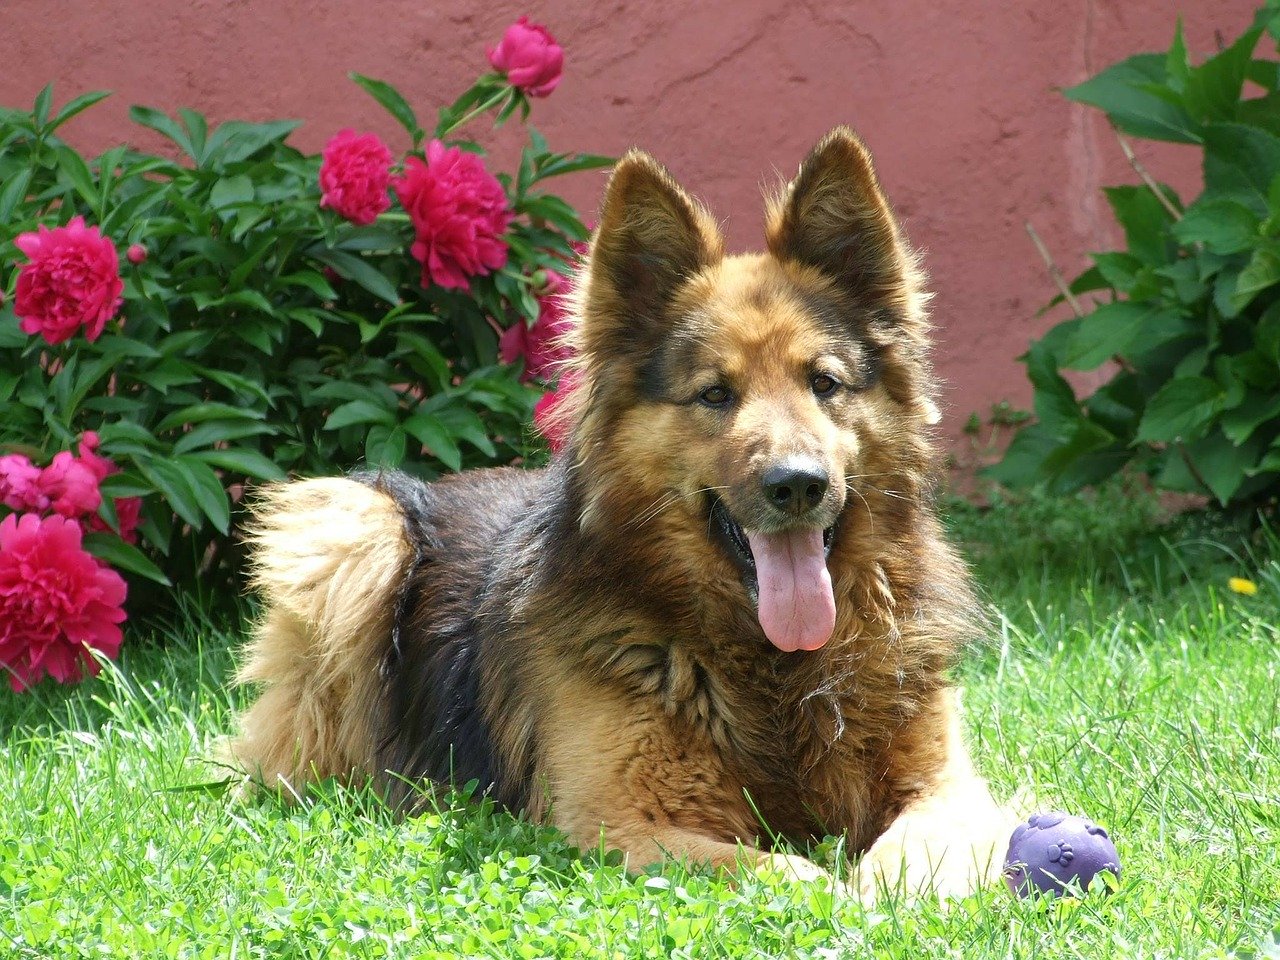 A German Shepherd dog sat in a garden